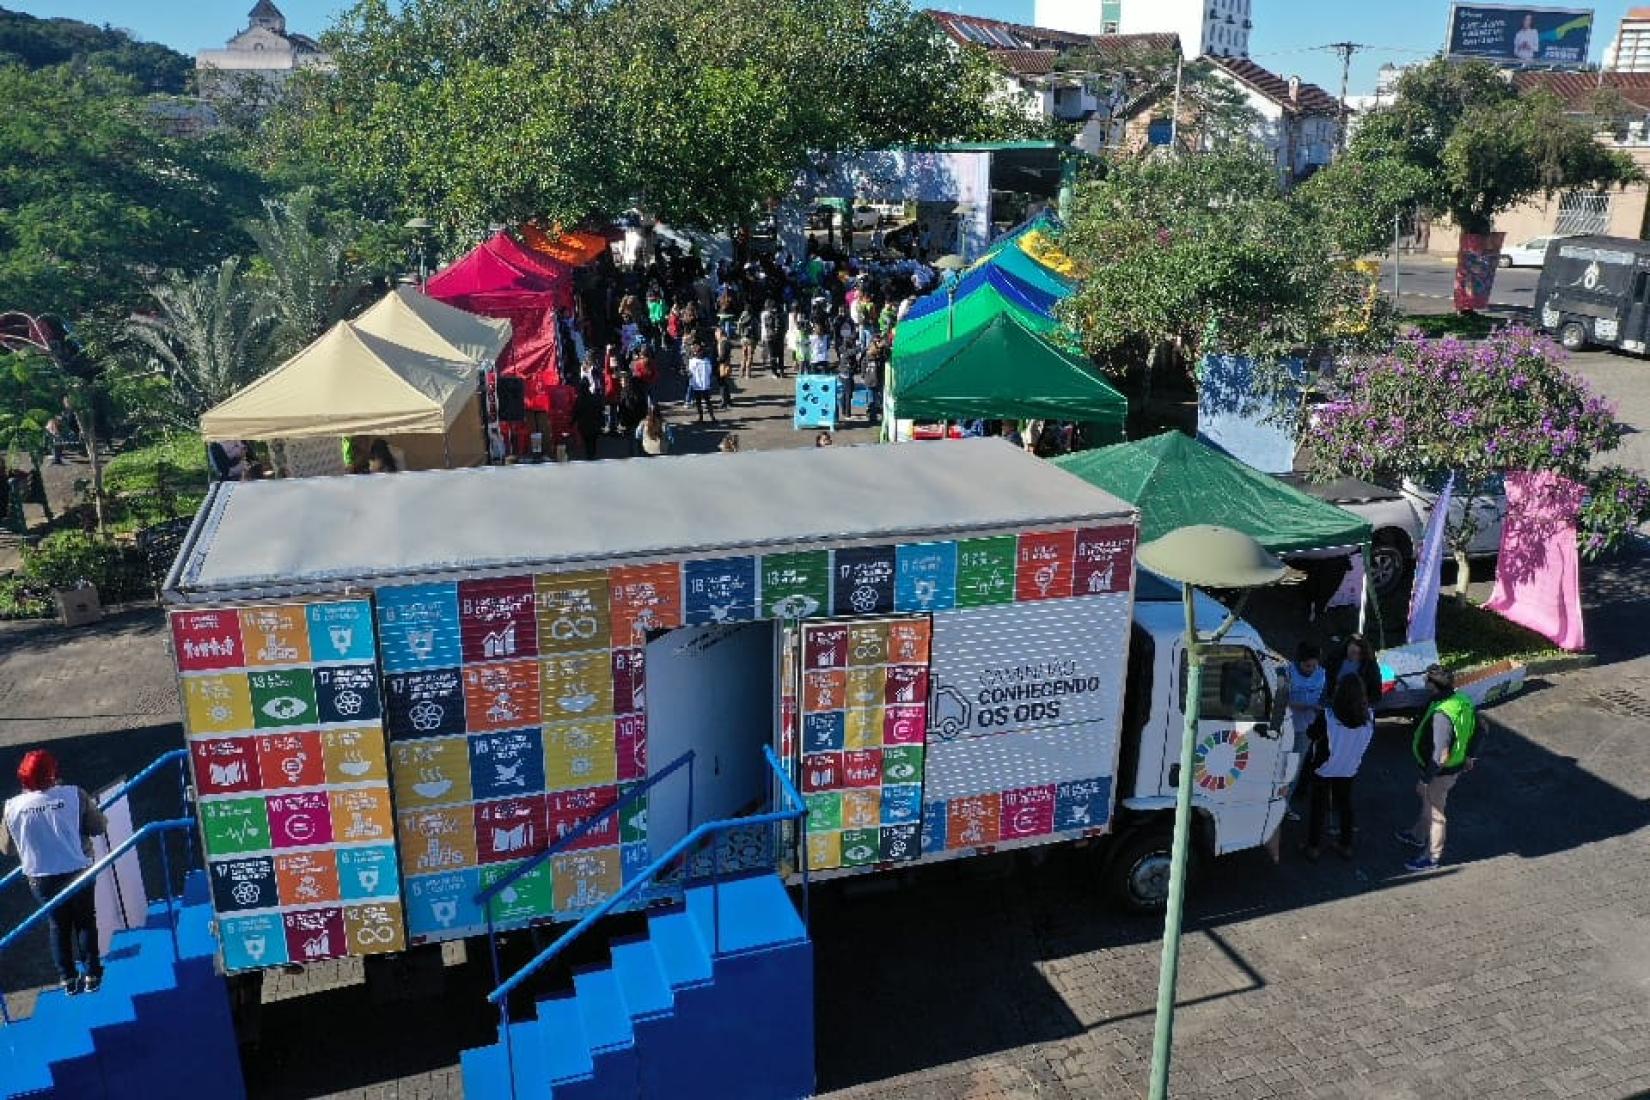 Iniciativa também ocorreu em 2019, levando ao público informações sobre os ODS, tanto dentro do caminhão quanto em tendas montadas em praças públicas. 